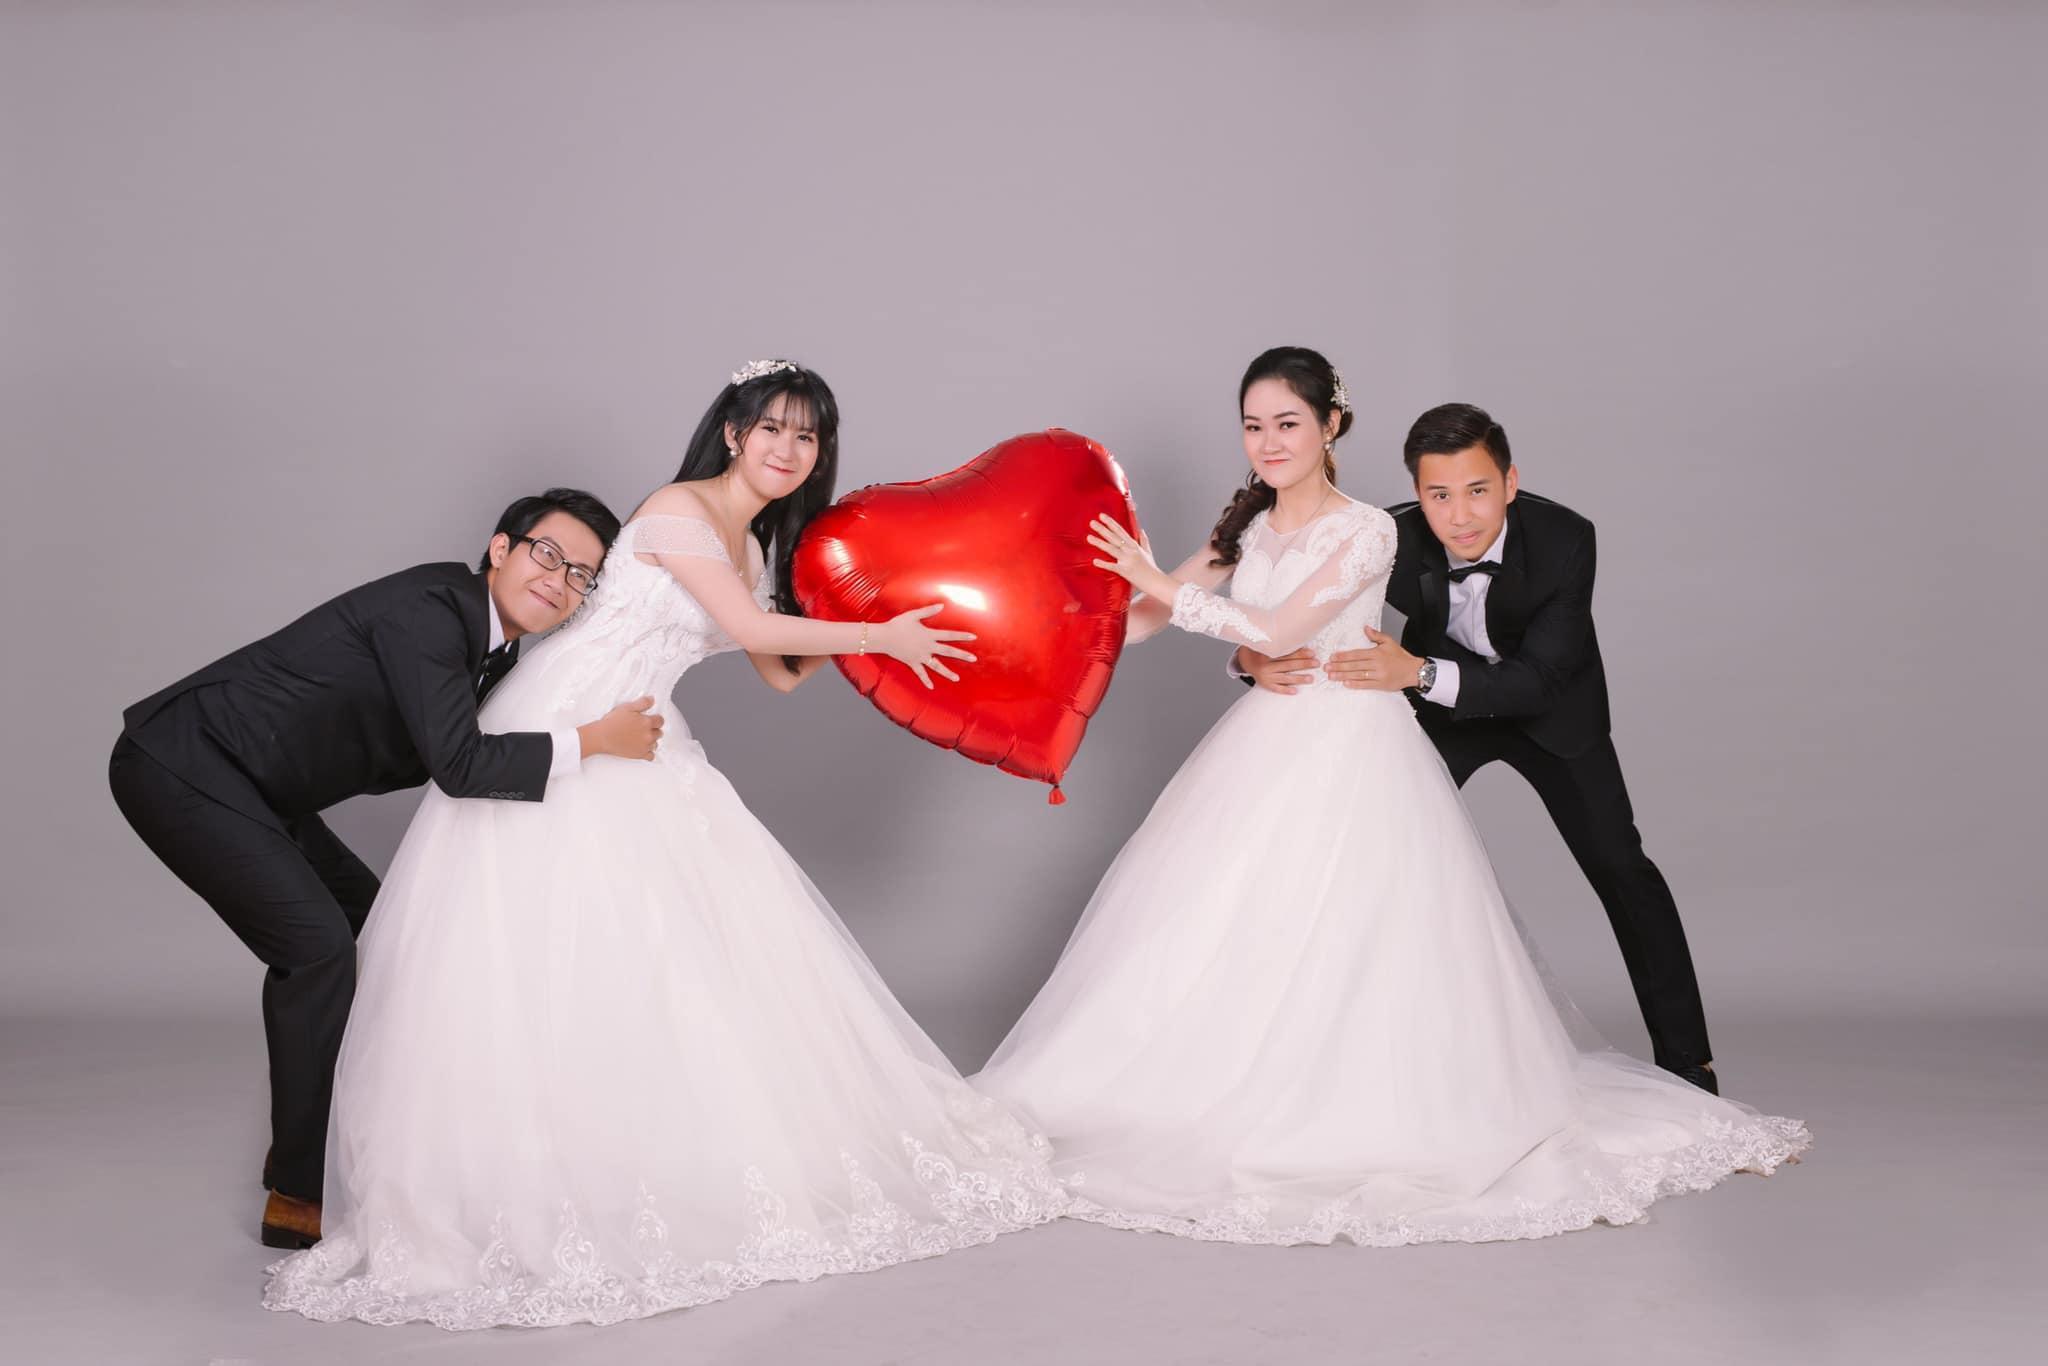 Bộ ảnh đẹp lung linh về đám cưới 4 người sẽ khiến bạn cảm thấy yên bình và hạnh phúc trong tình yêu của một gia đình đậm chất Việt.